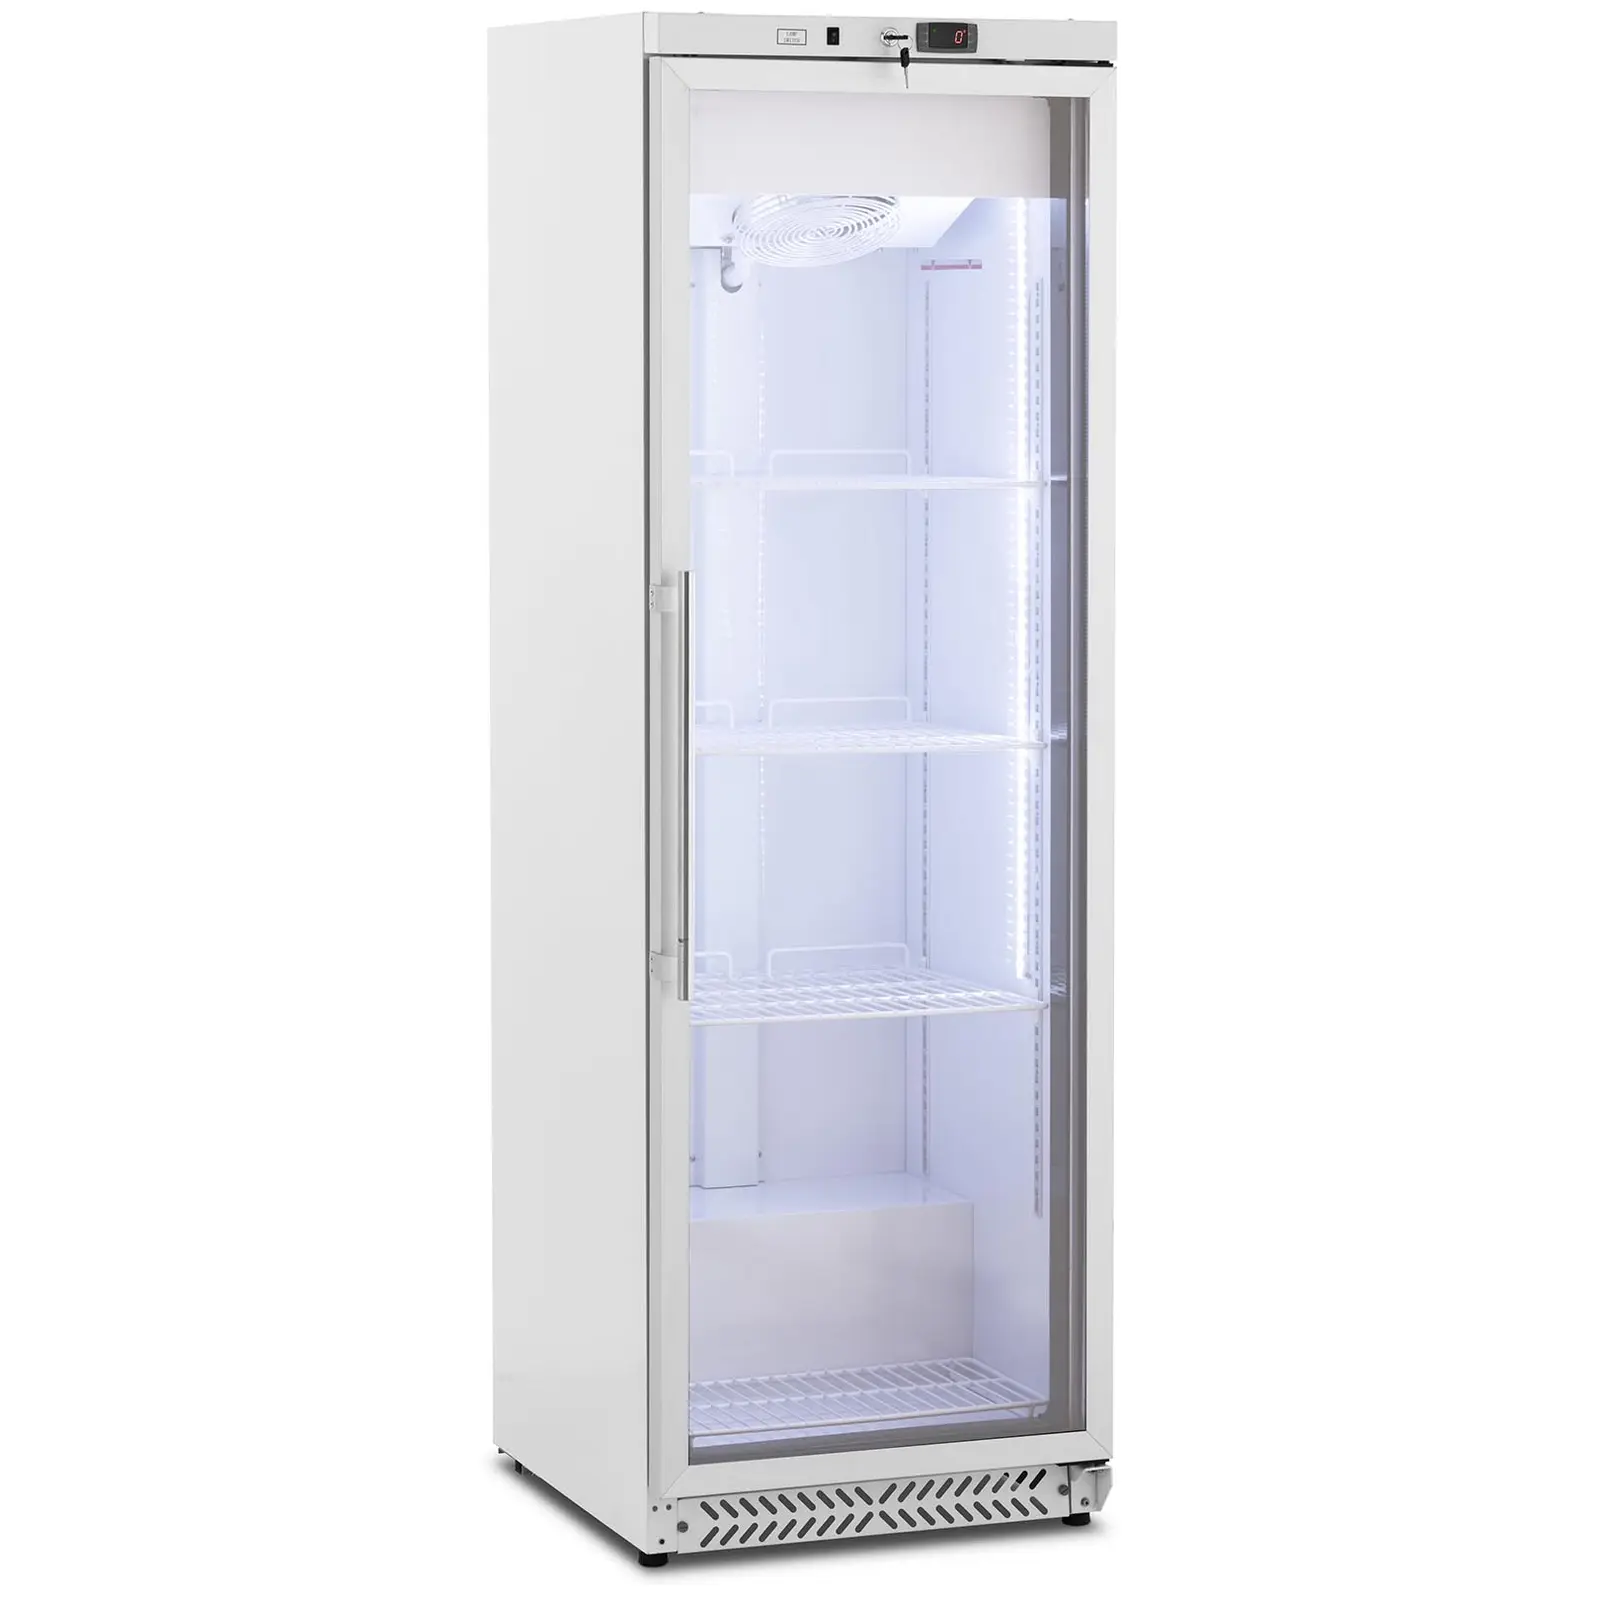 Šaldytuvas - 380 l - „Royal Catering“ - su stiklinėmis durimis